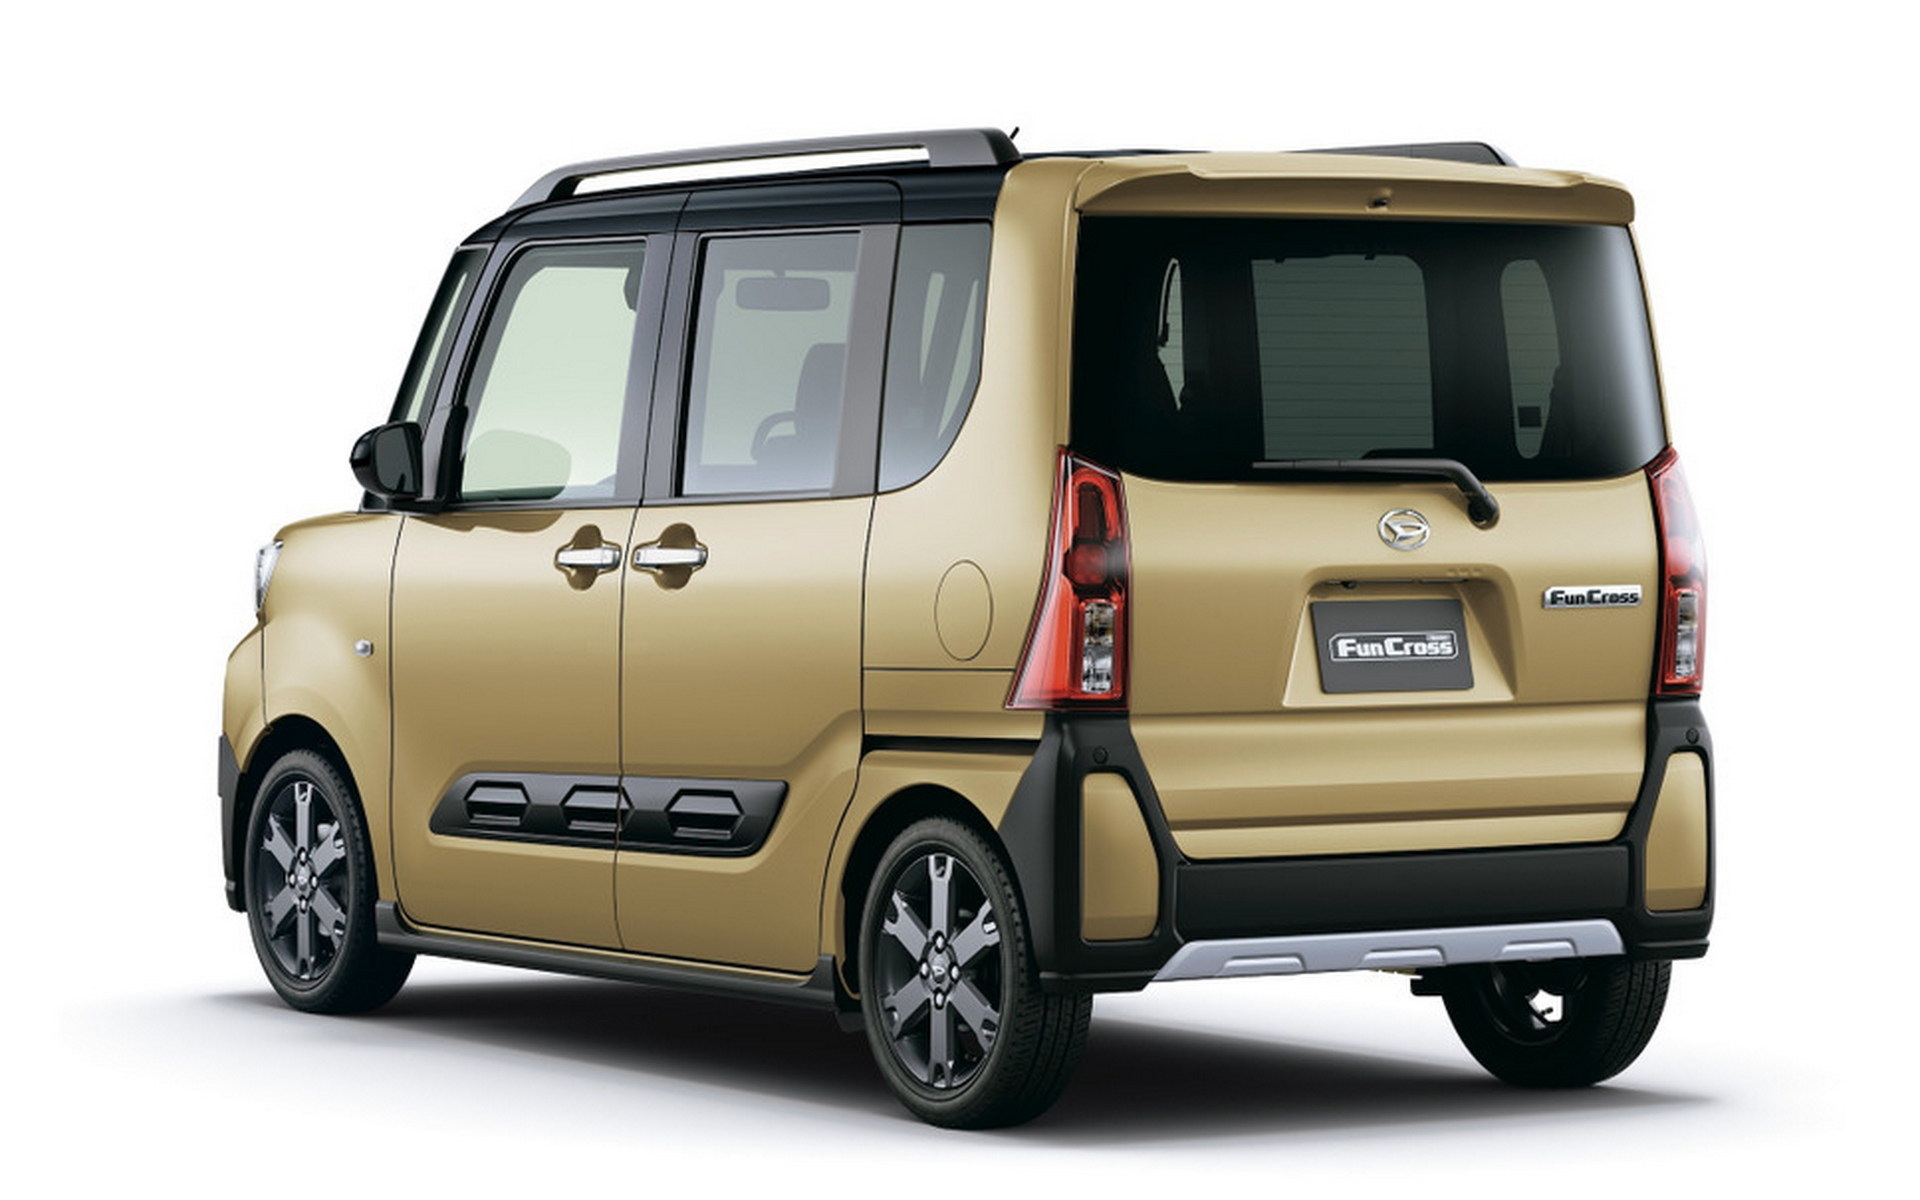 Daihatsu представил бюджетный кей-кар в стиле кроссовера